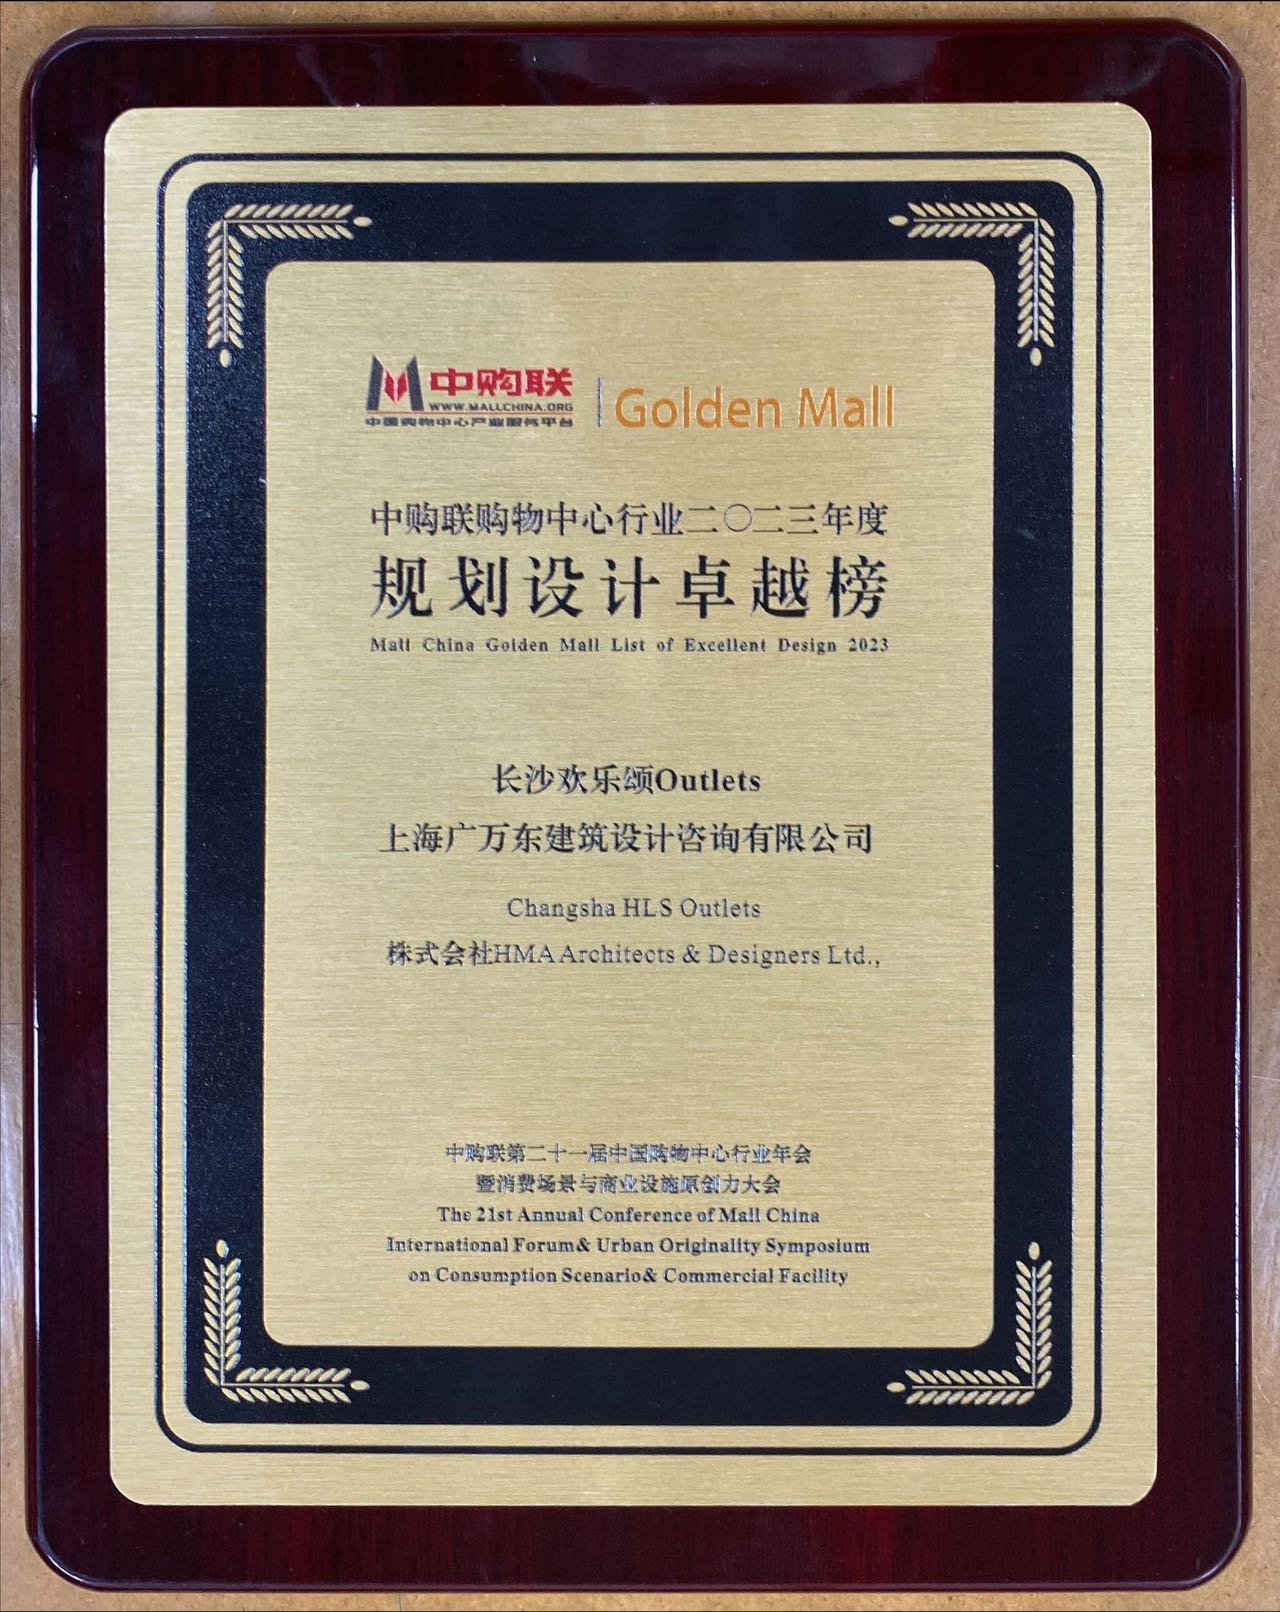 2023年度 Mall China Golden Mall List of Excellent Design